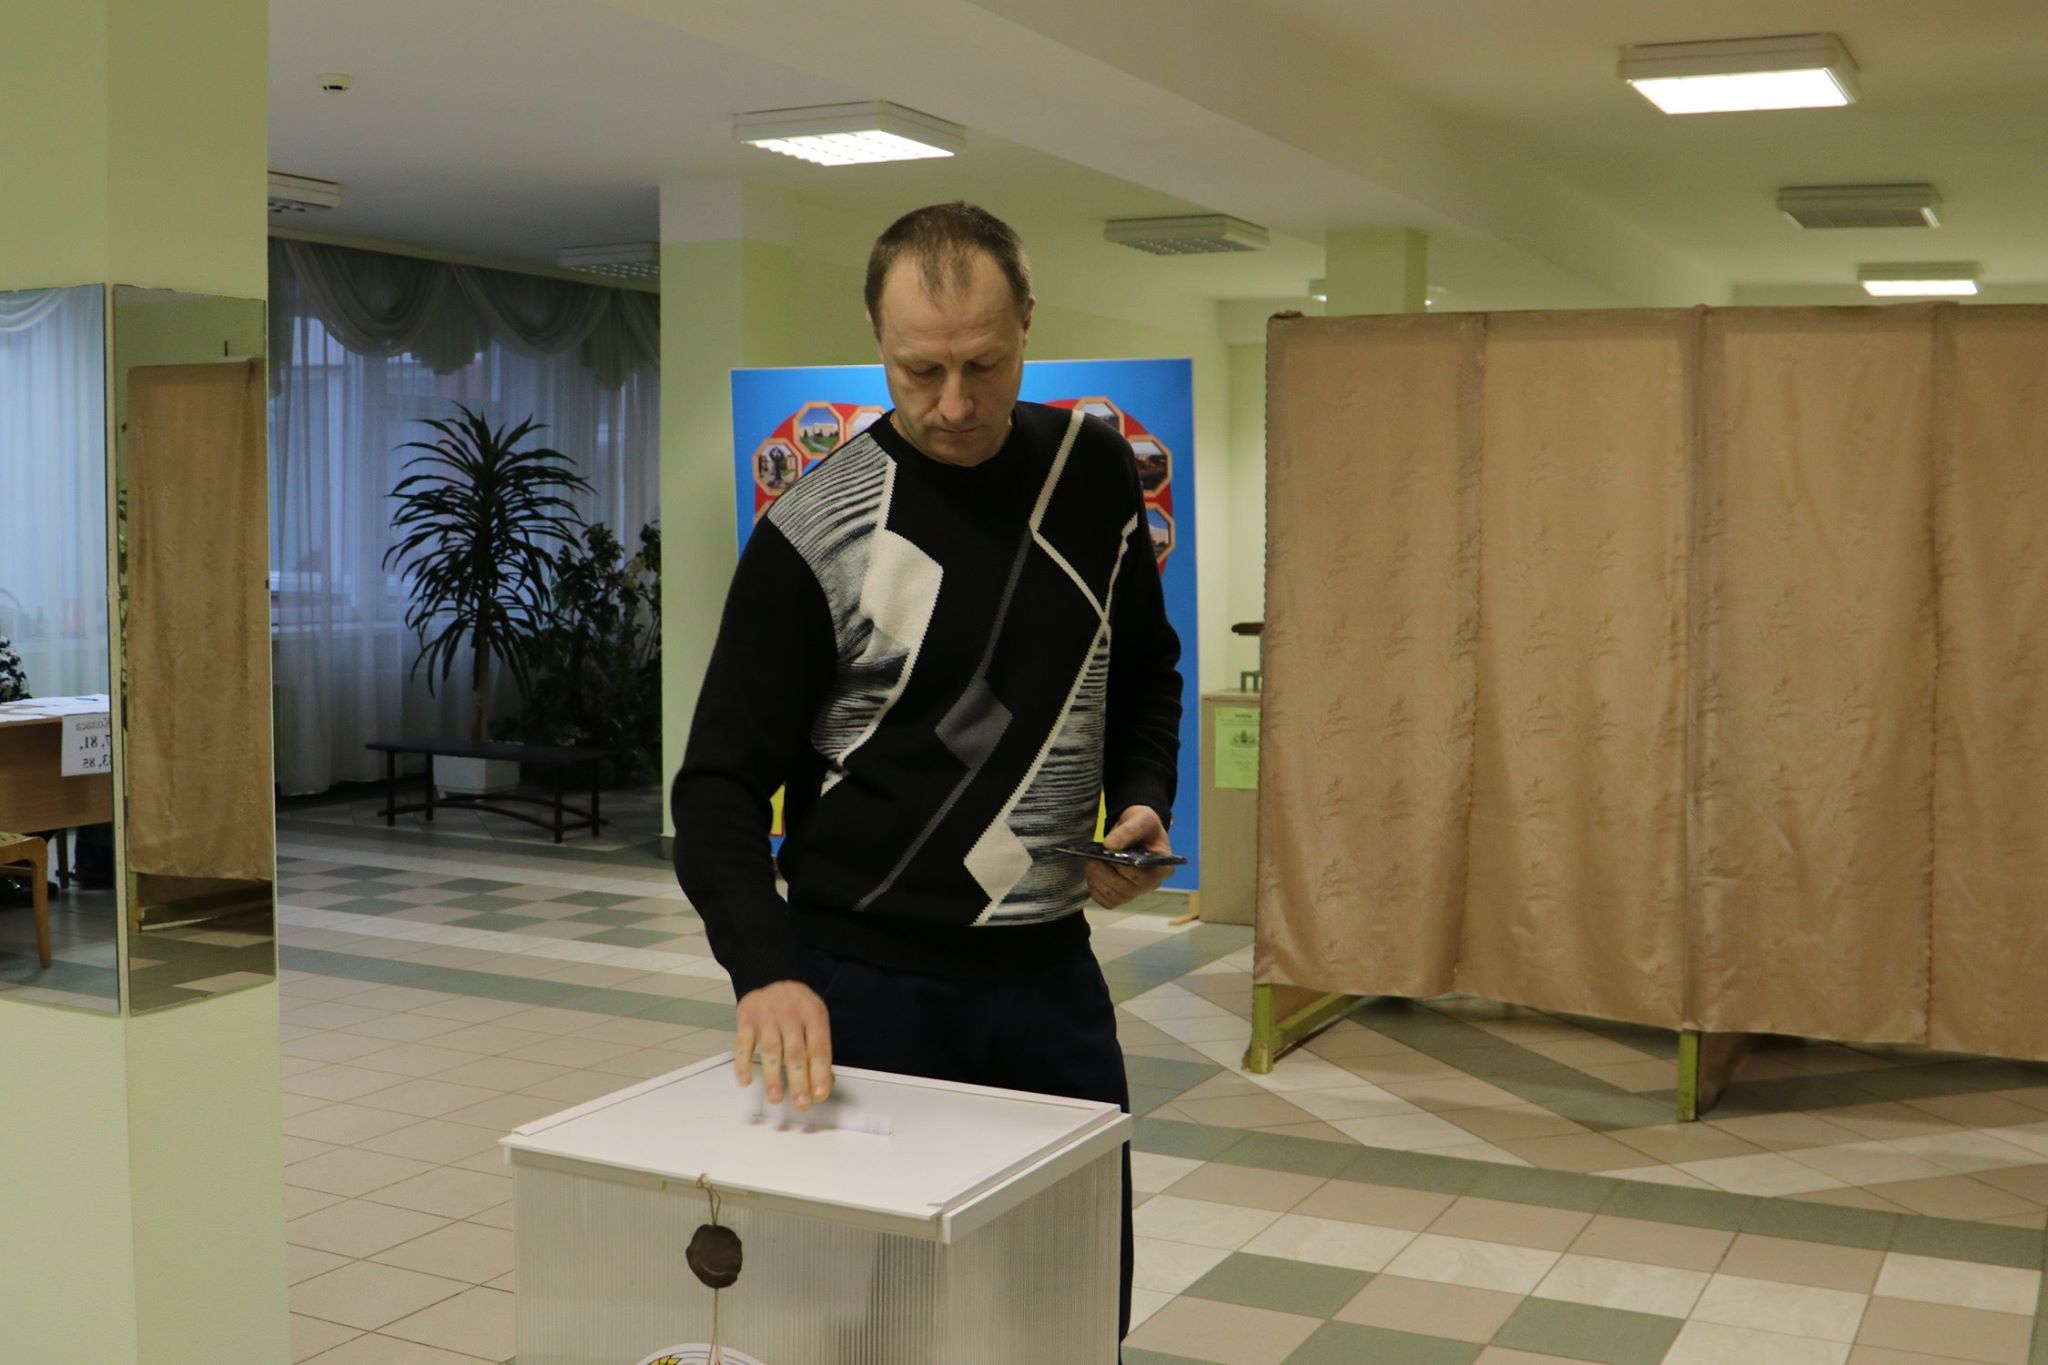 Избирательный участок №7. Валерьян Свекло - избиратель и наблюдатель в одном лице